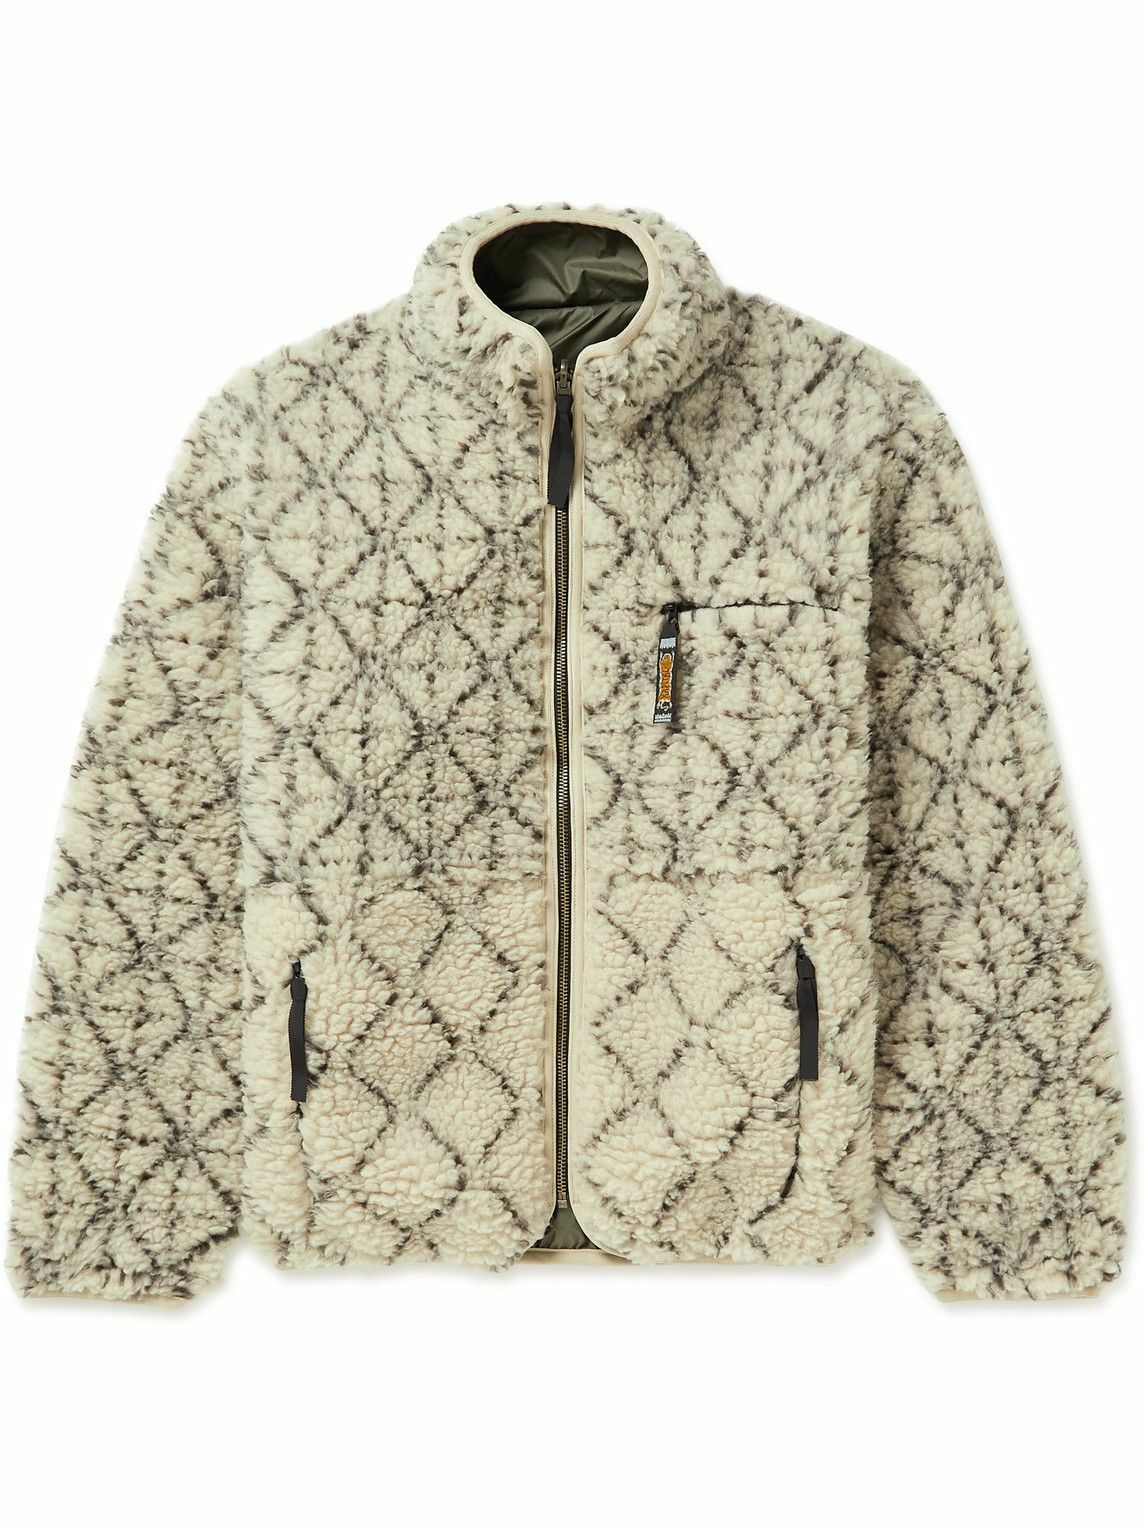 Photo: KAPITAL - Sashiko Boa Reversible Printed Fleece and Shell Jacket - Neutrals